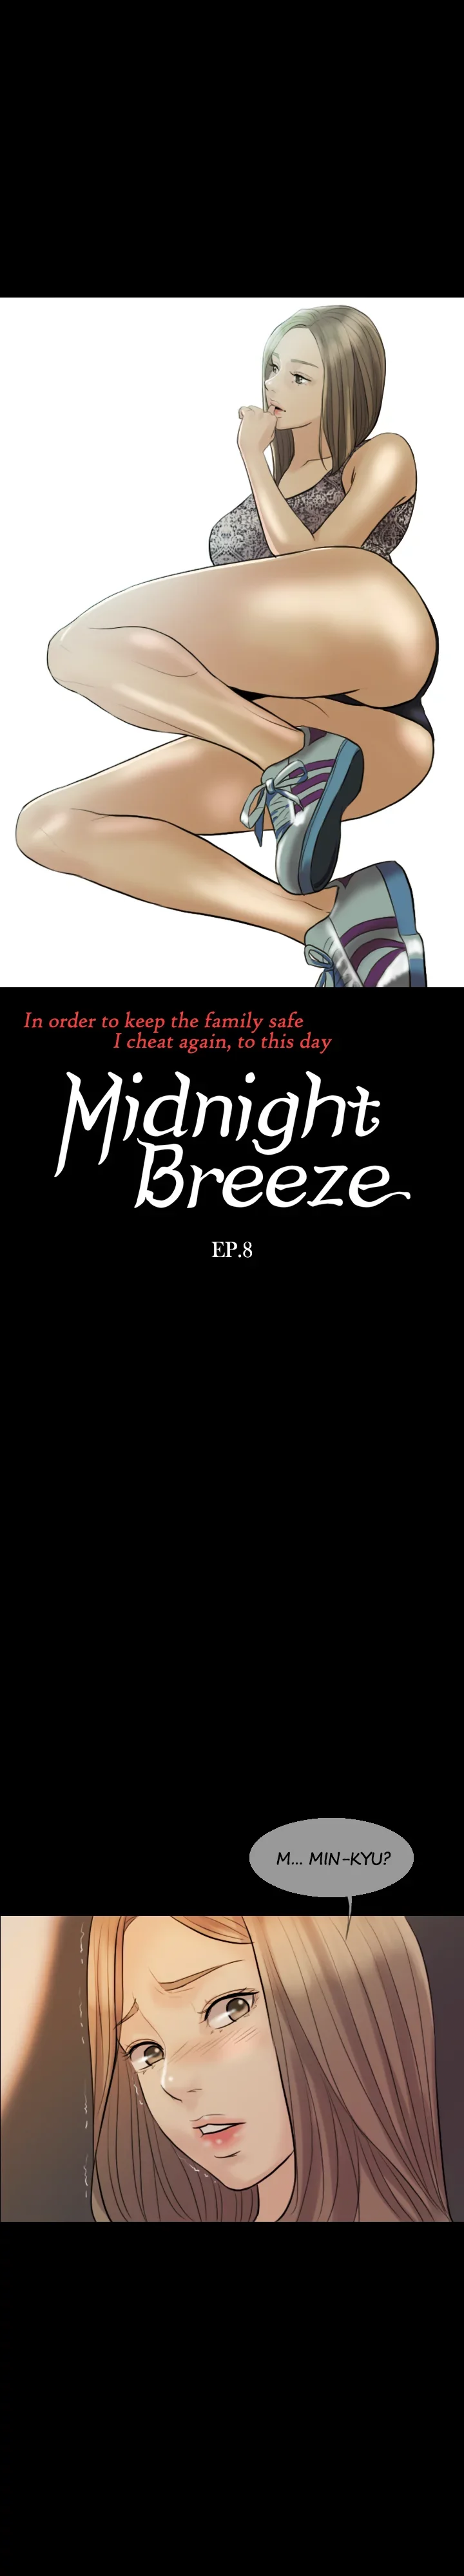 midnight-breeze-chap-8-1